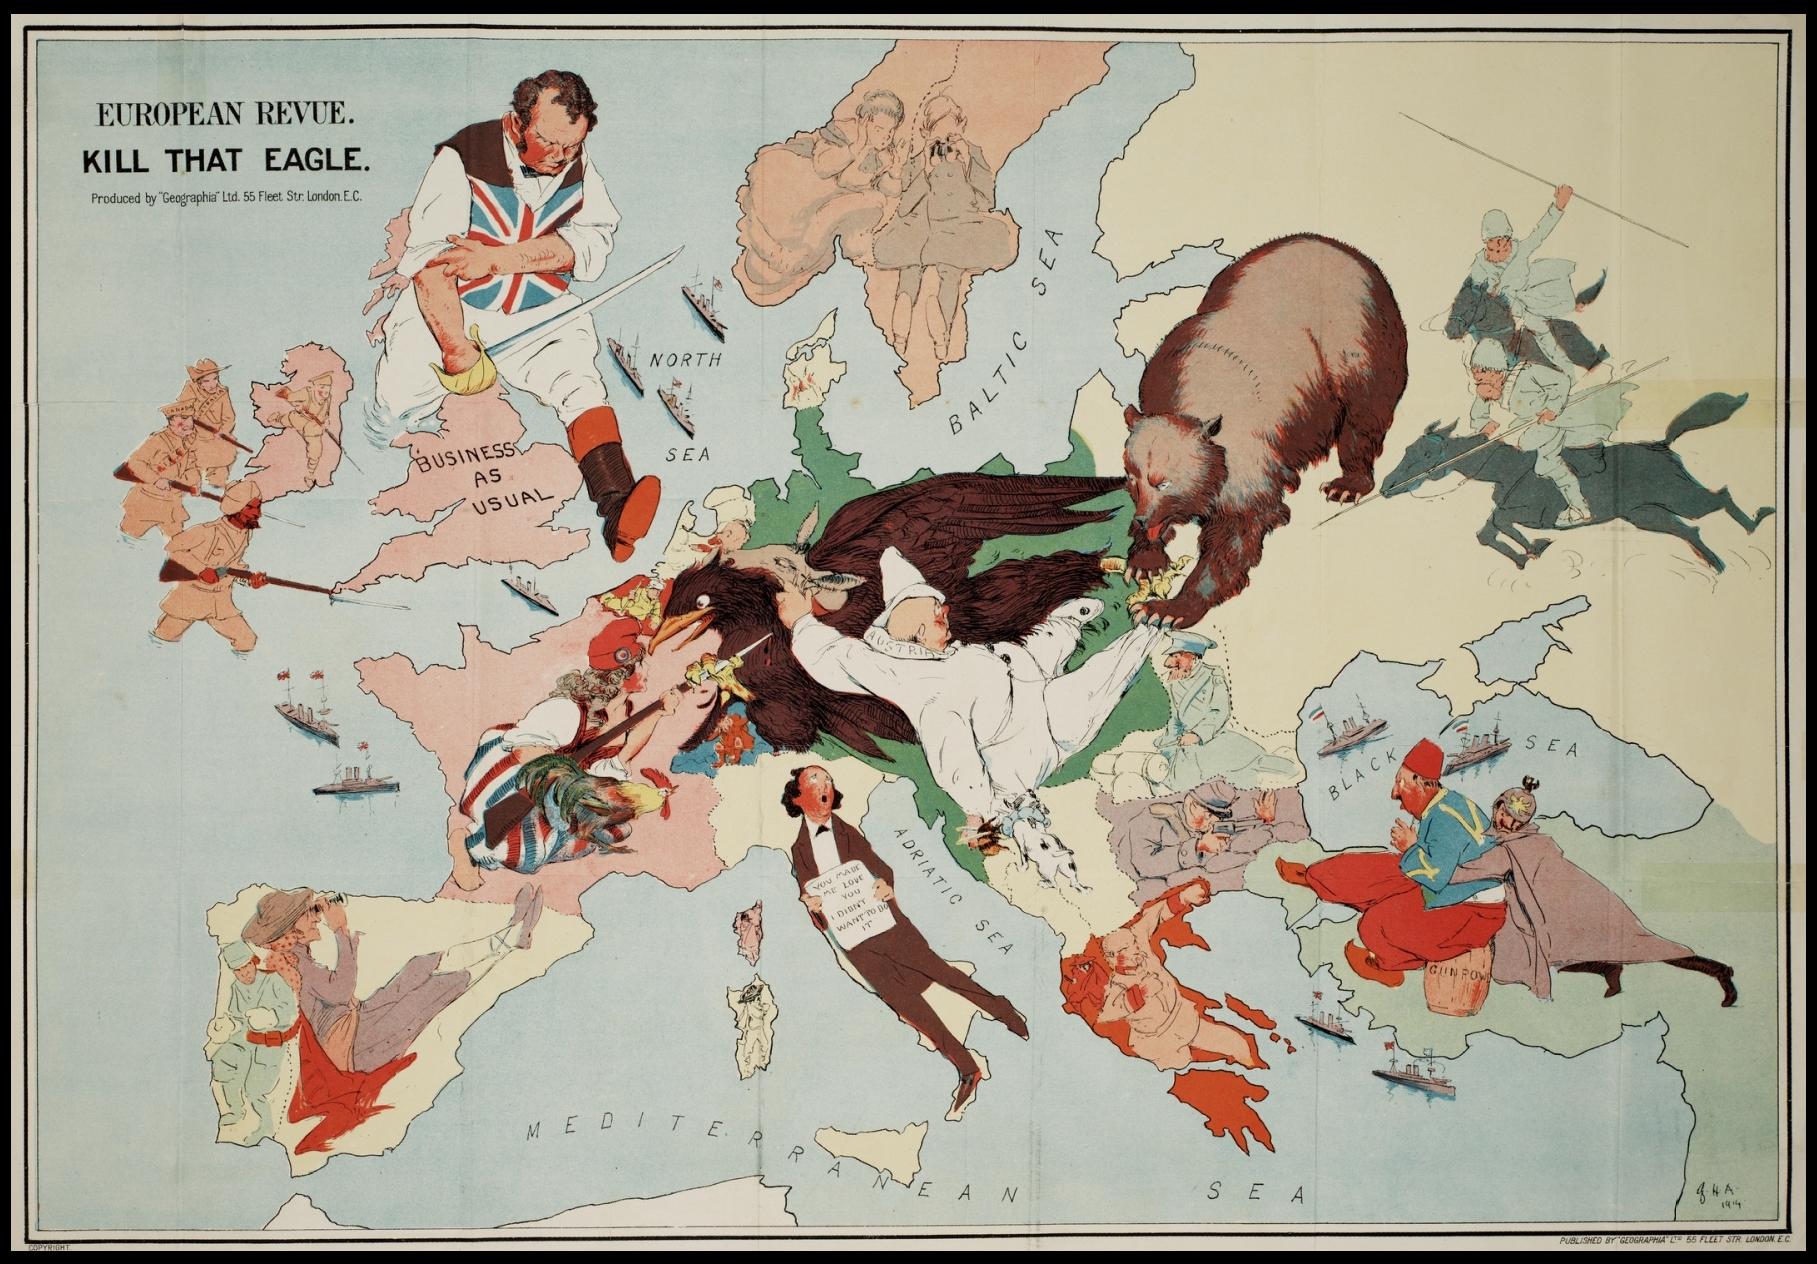 מפת מאוירת של אירופה המציגה את מלחמת העולם הראשונה מקור מהספרBetween Empire and Continent: British Foreign Policy Before the First World War